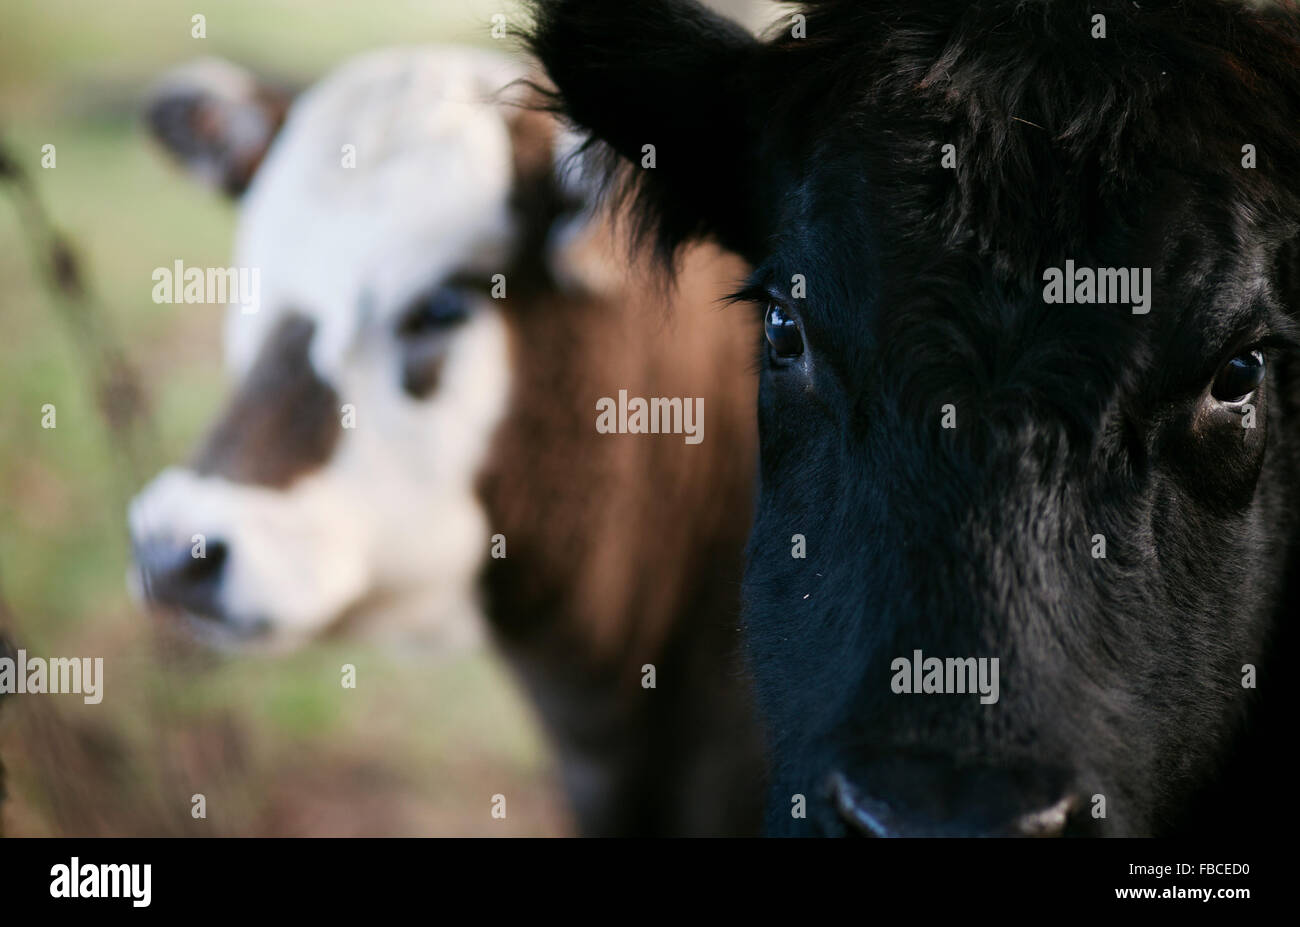 Nahaufnahme von zwei Kühe Gesichter; schwarze Kuh auf der Suche direkt auf den Betrachter mit braun, weiße Kuh im Hintergrund suchen ab Stockfoto